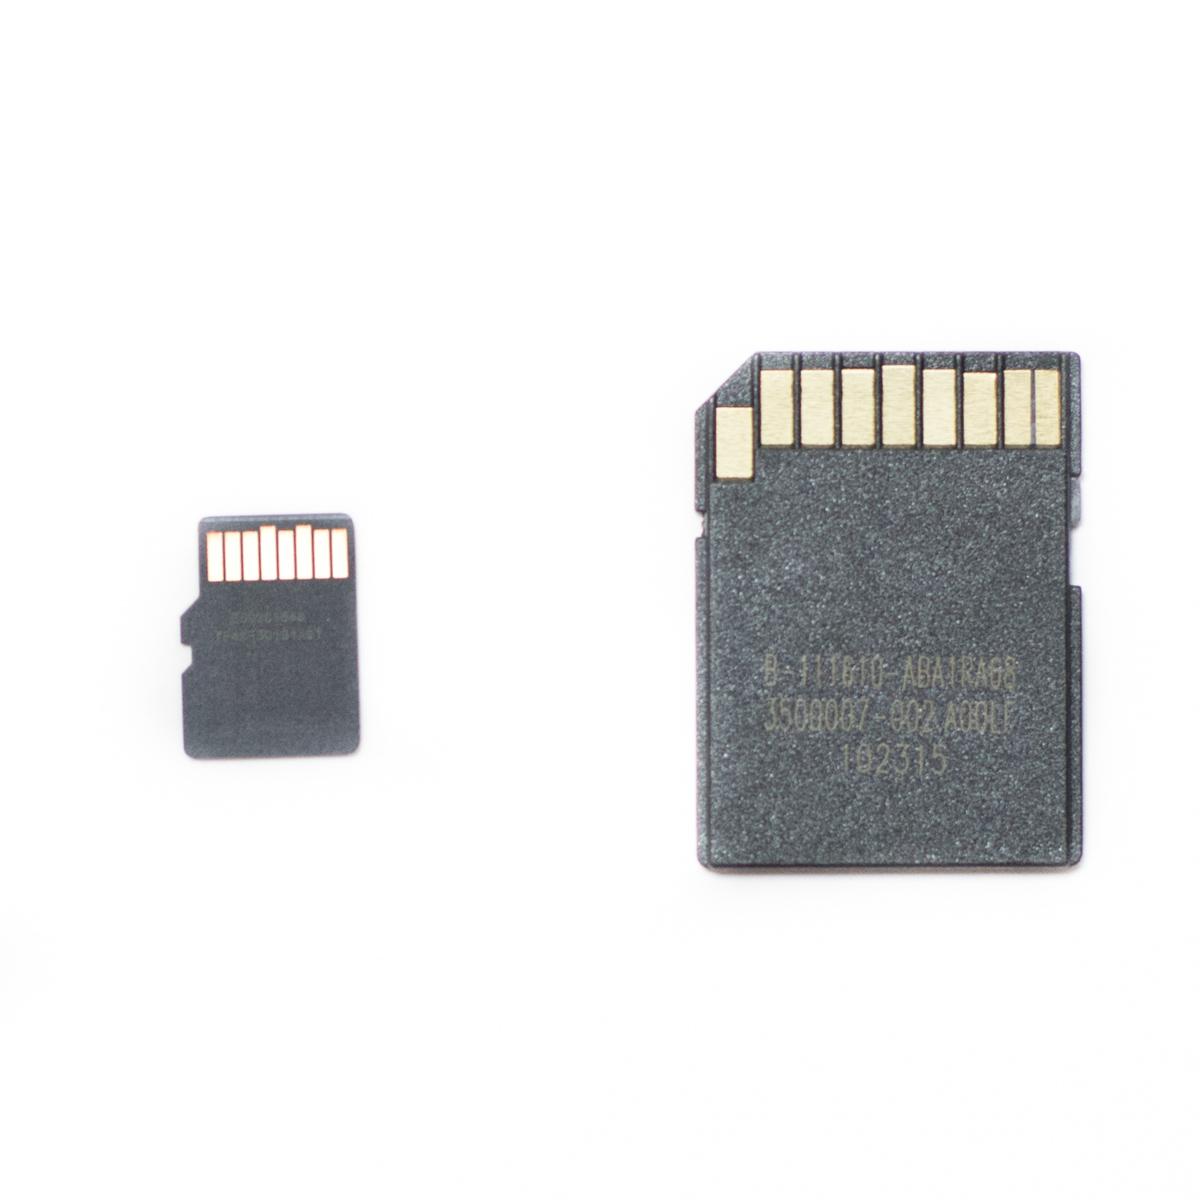 Обзор microSDHC карты памяти Kingston SDCA10 объемом 32 ГБ